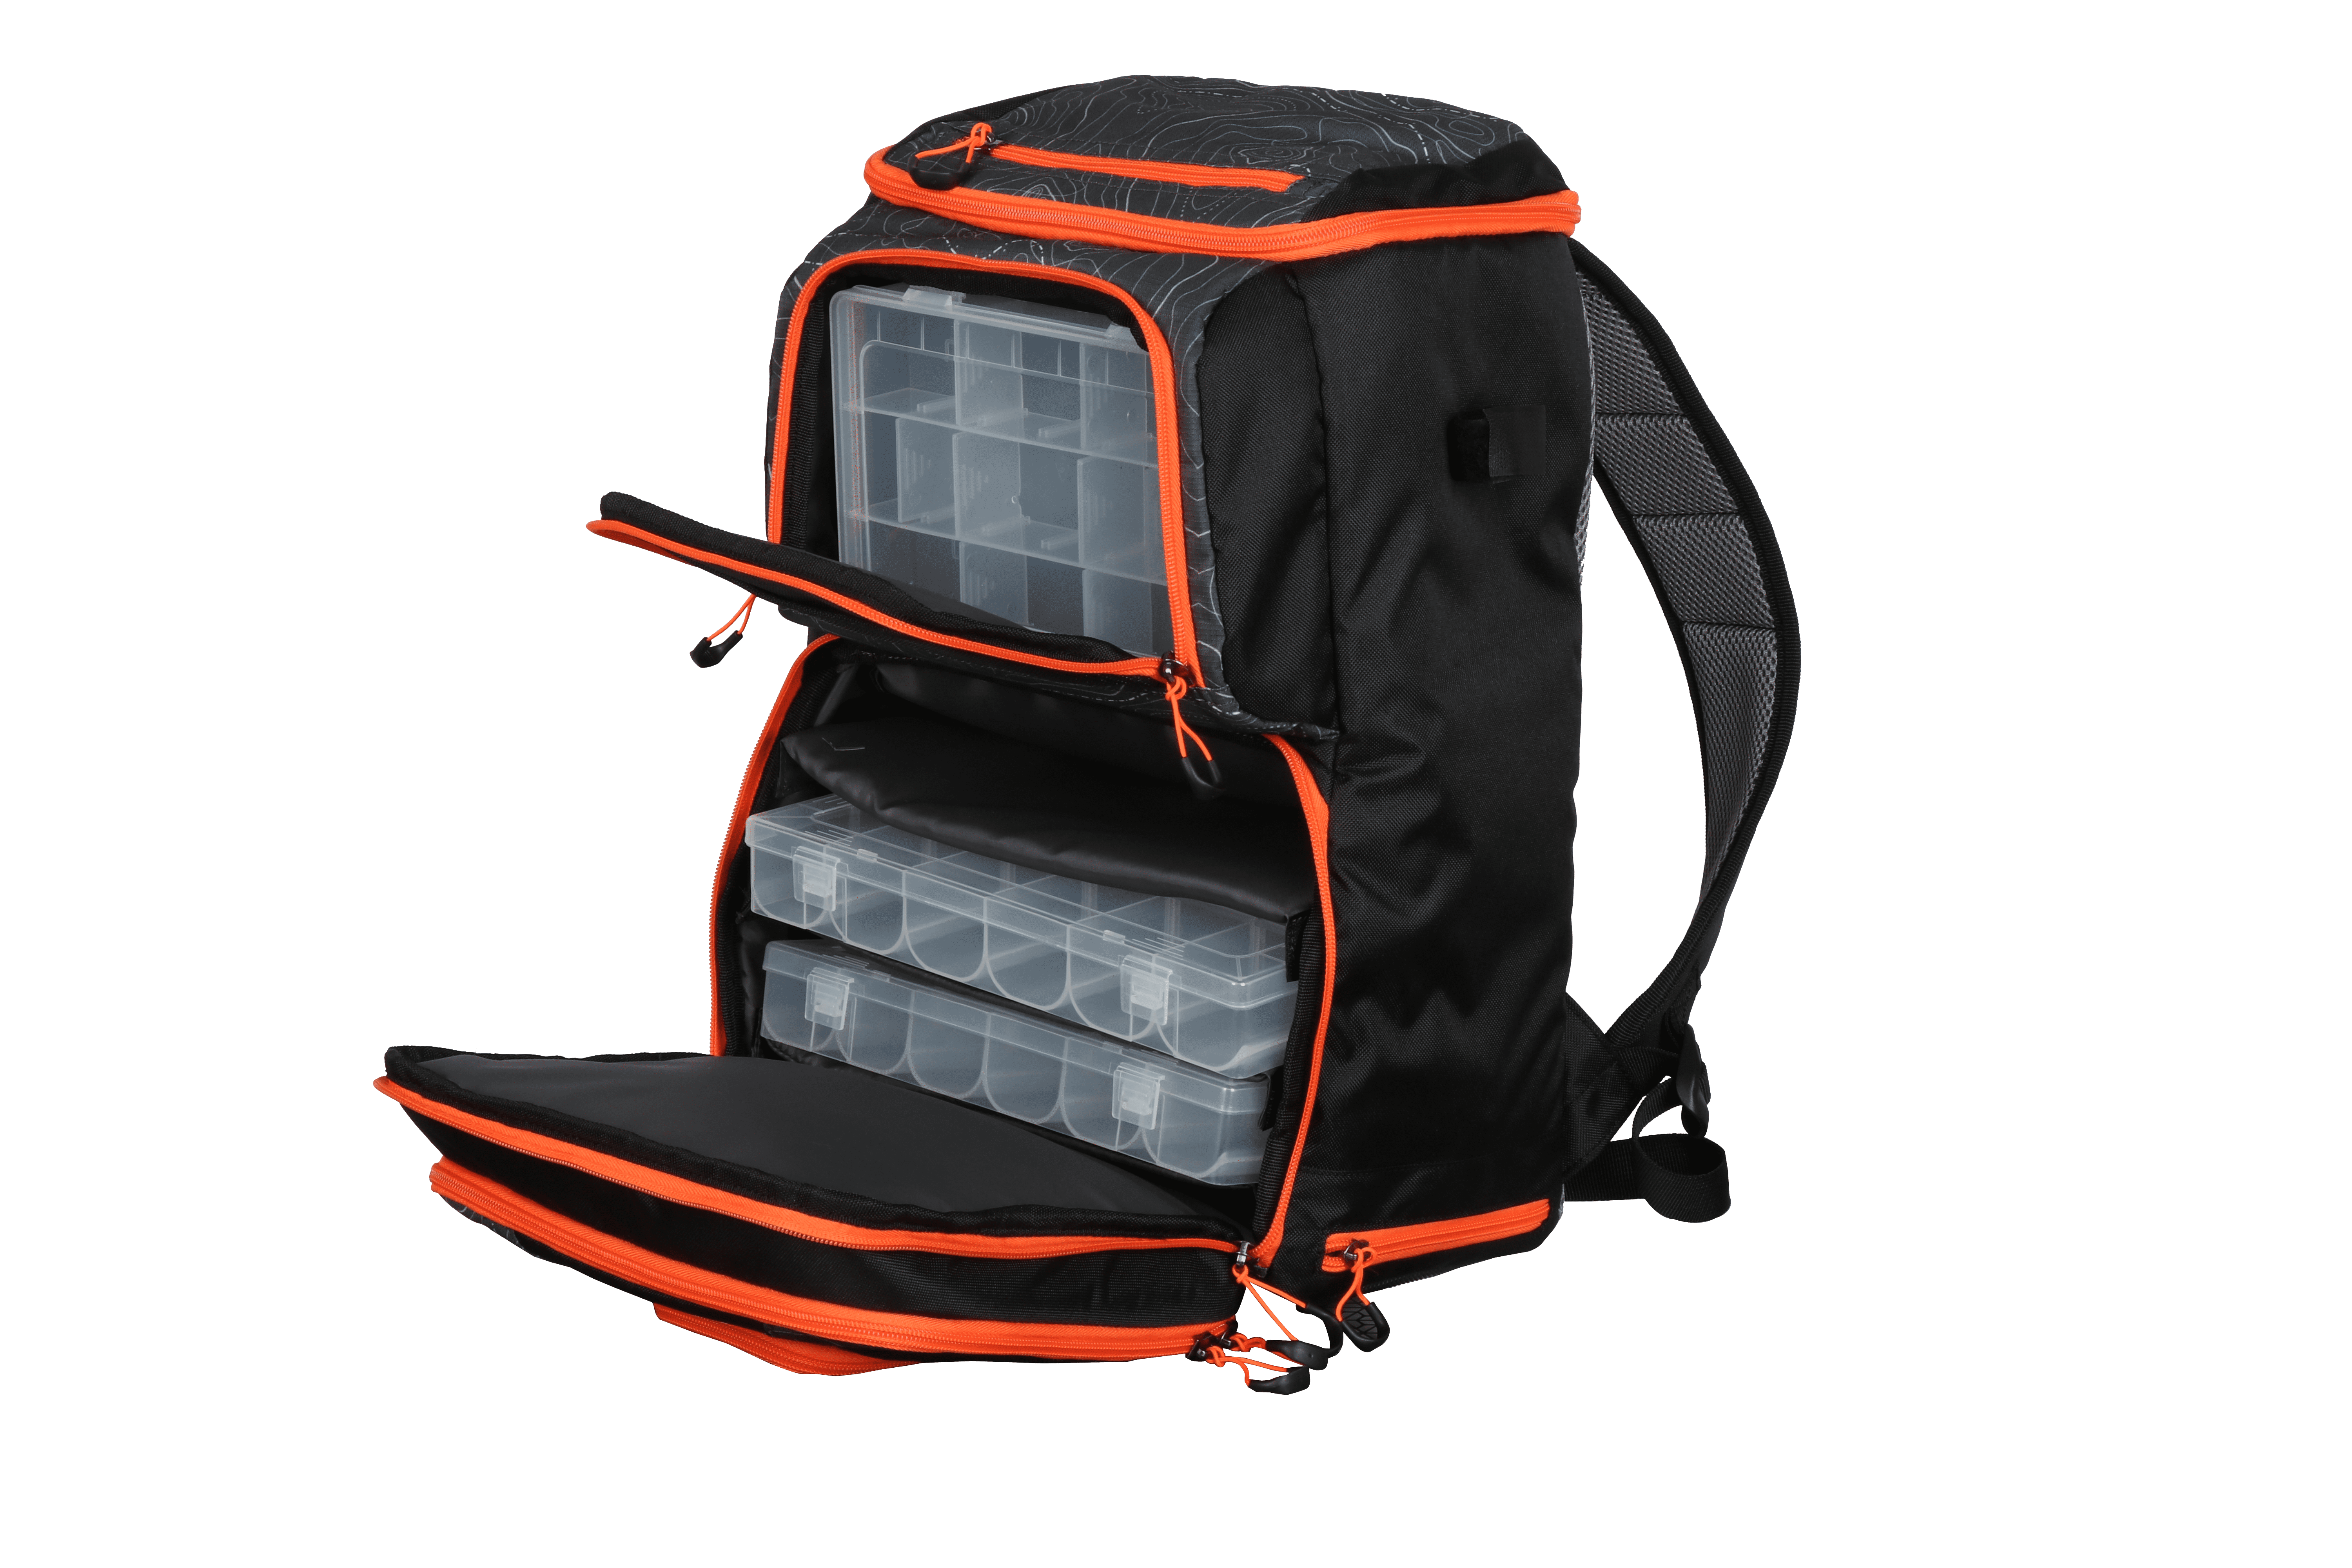 Ozark Trail Elite Fishing Tackle Backpack with Bait Cooler, Black 